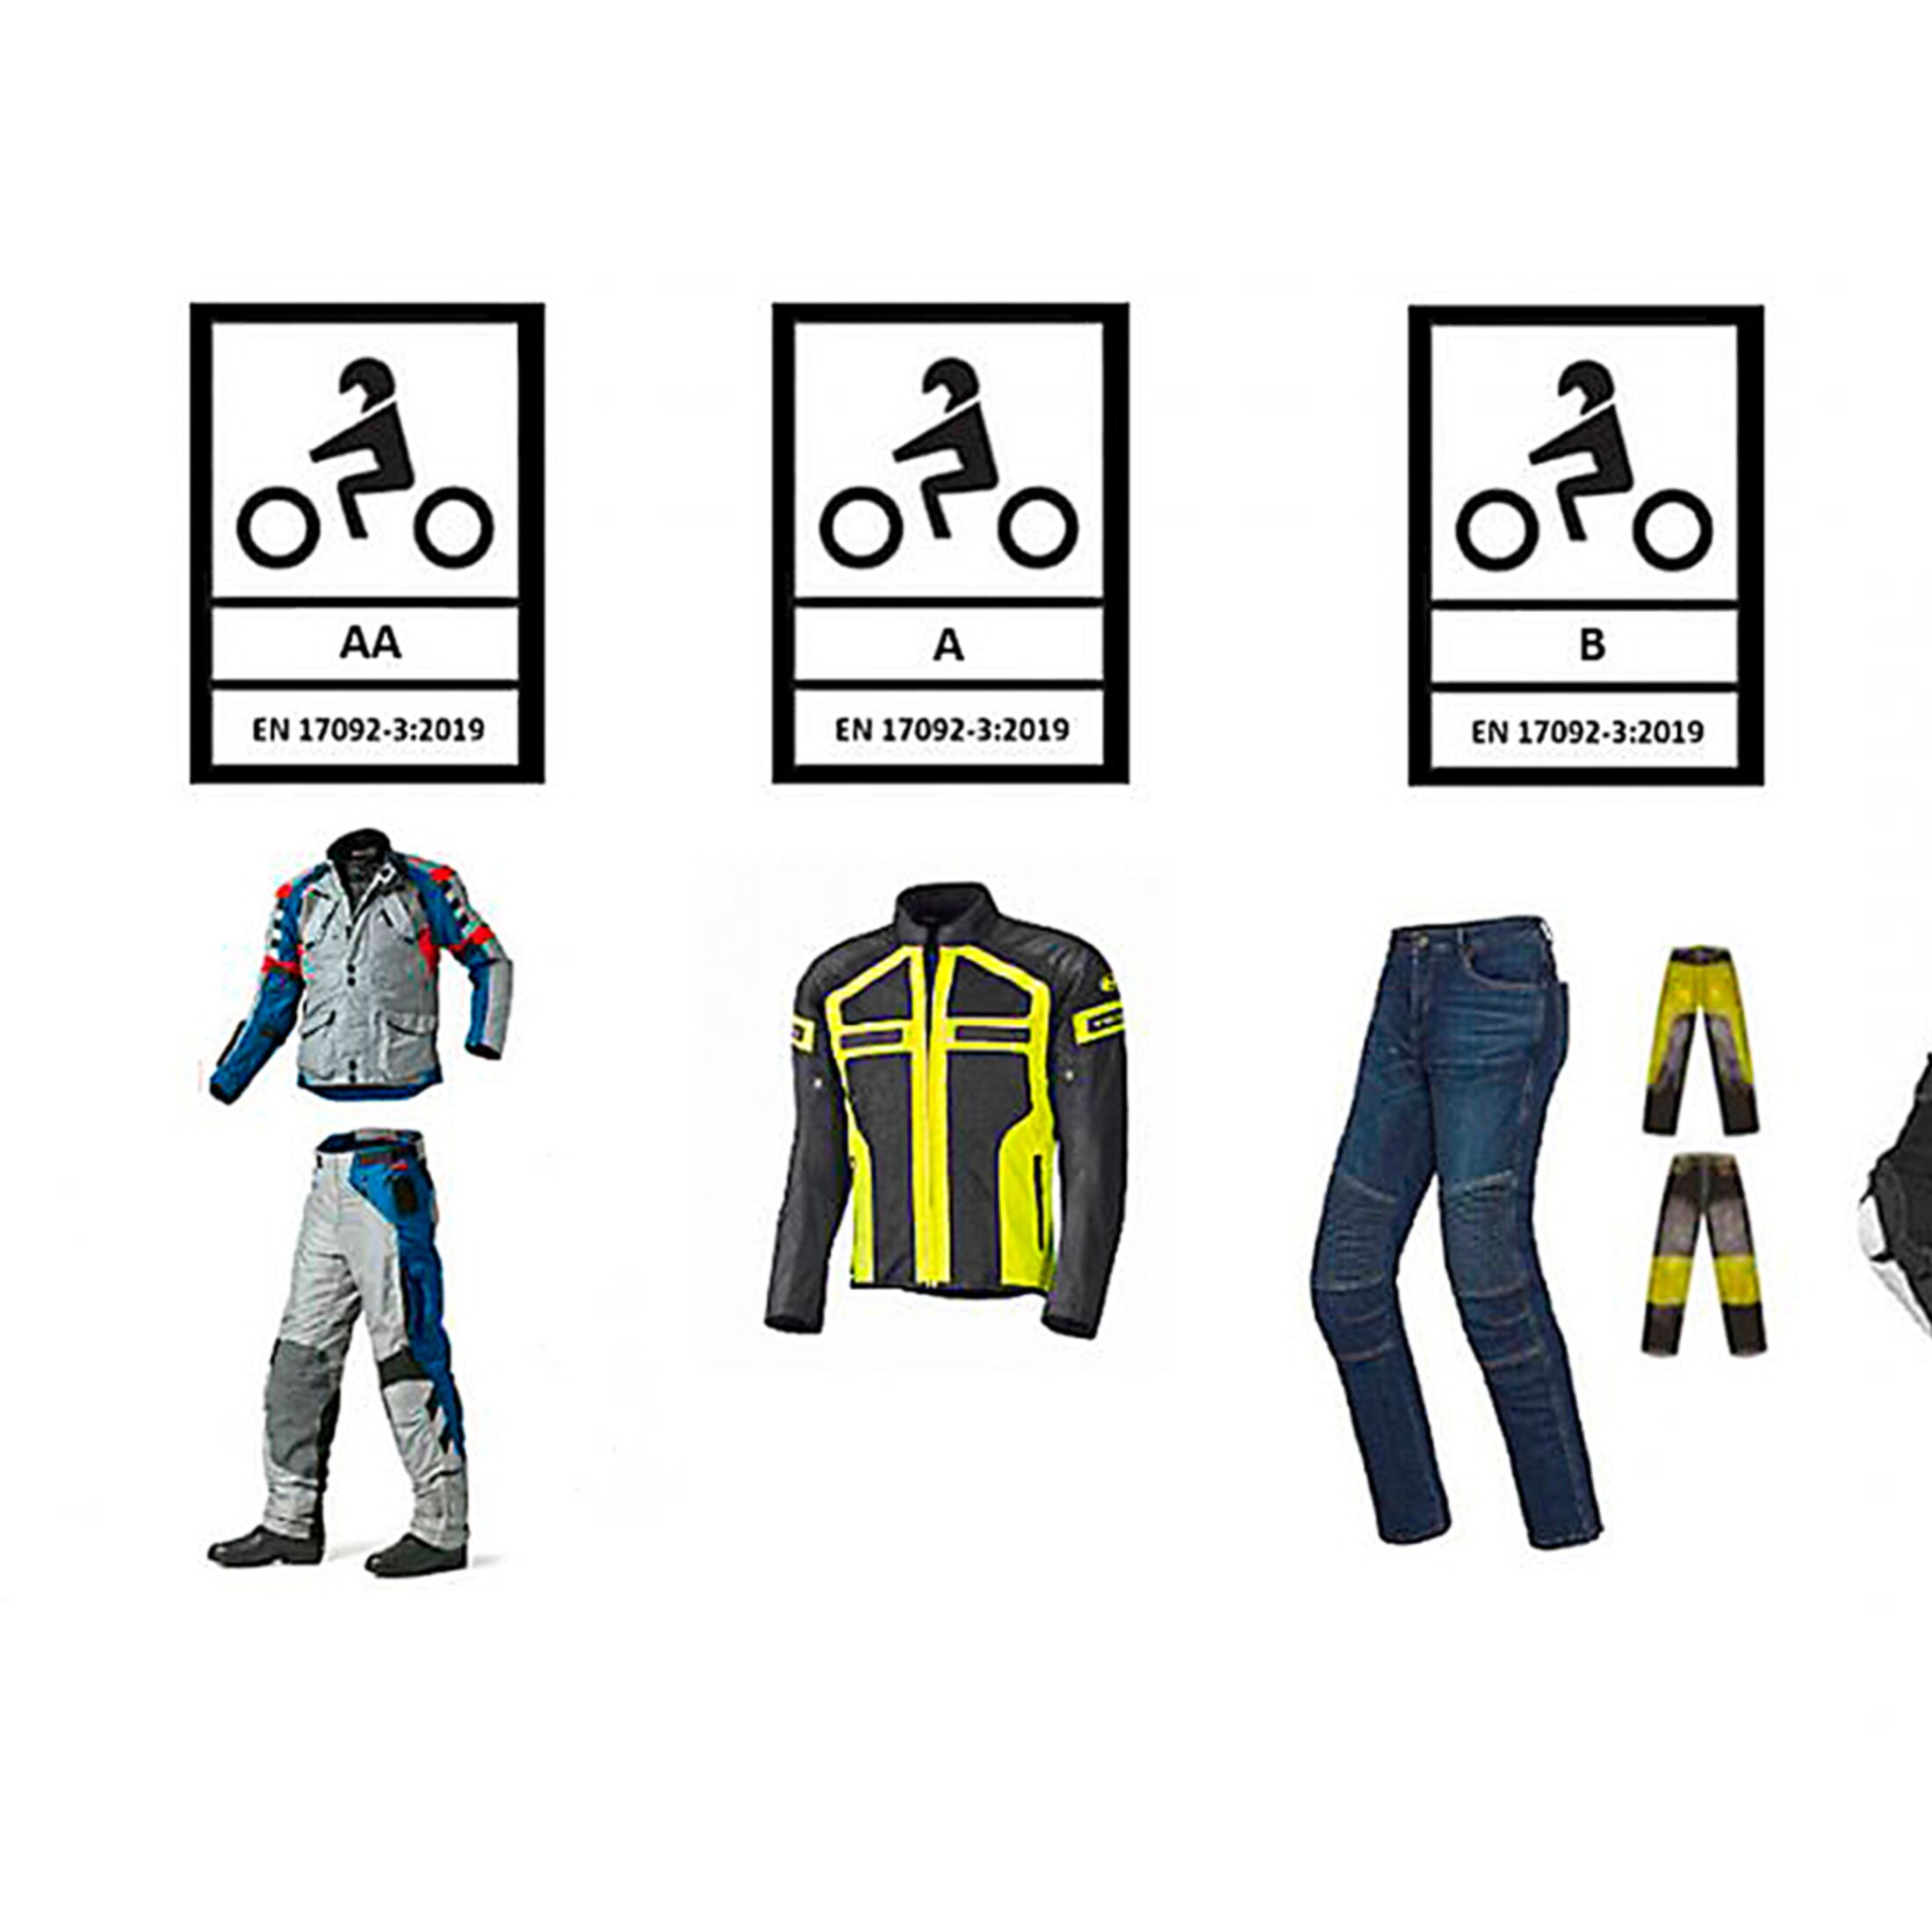 5 neue Sicherheitsstandards für Motorradbekleidung